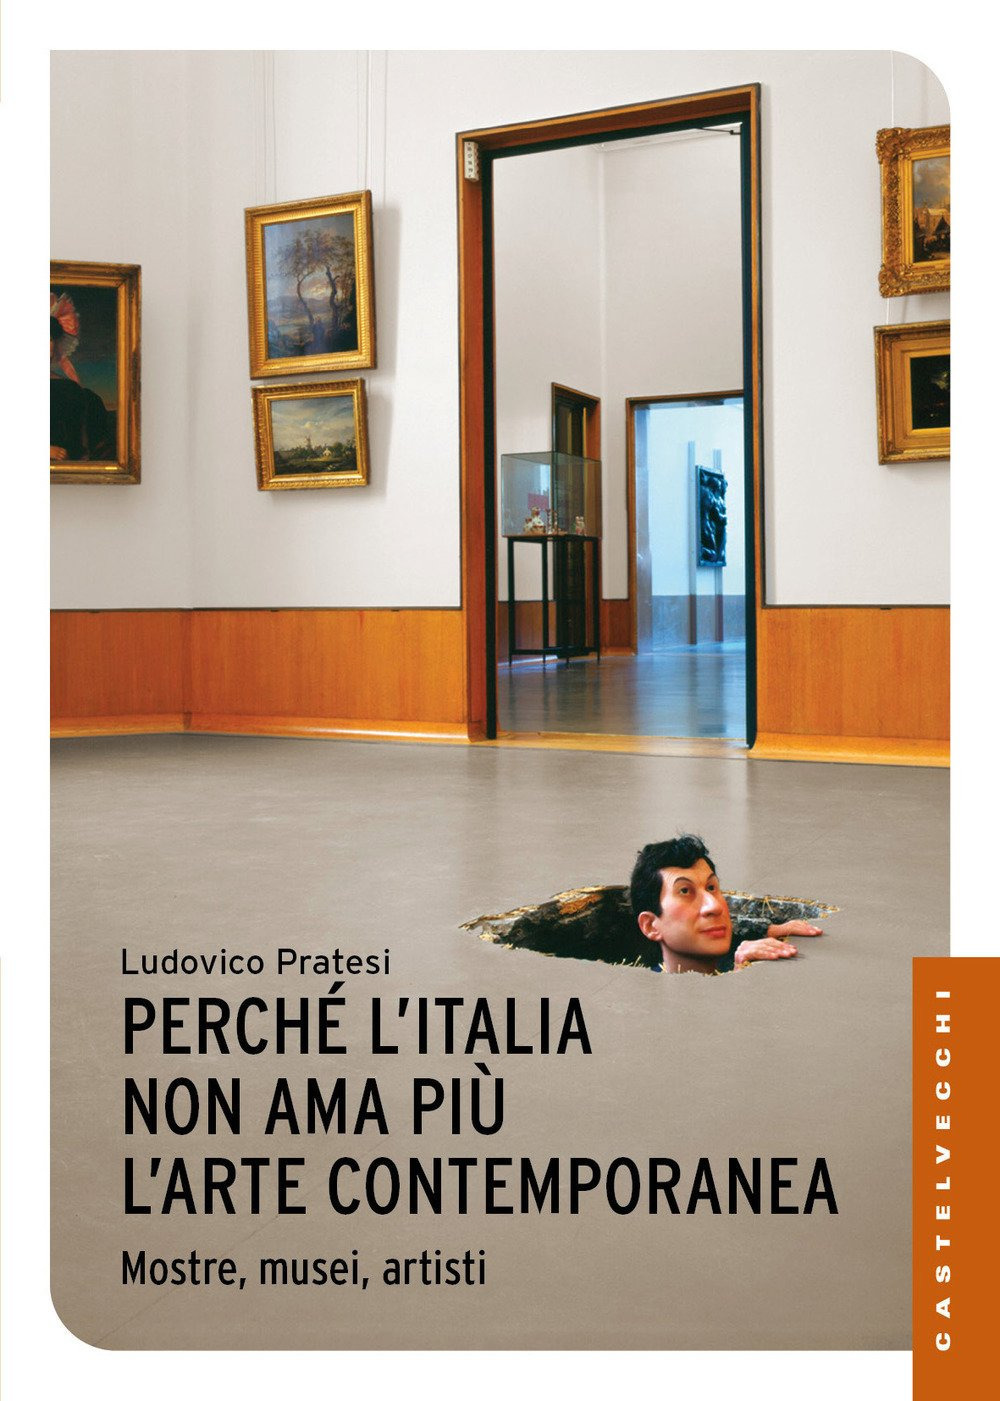 Ludovico Pratesi, Perché l'Italia non ama più l'arte contemporanea